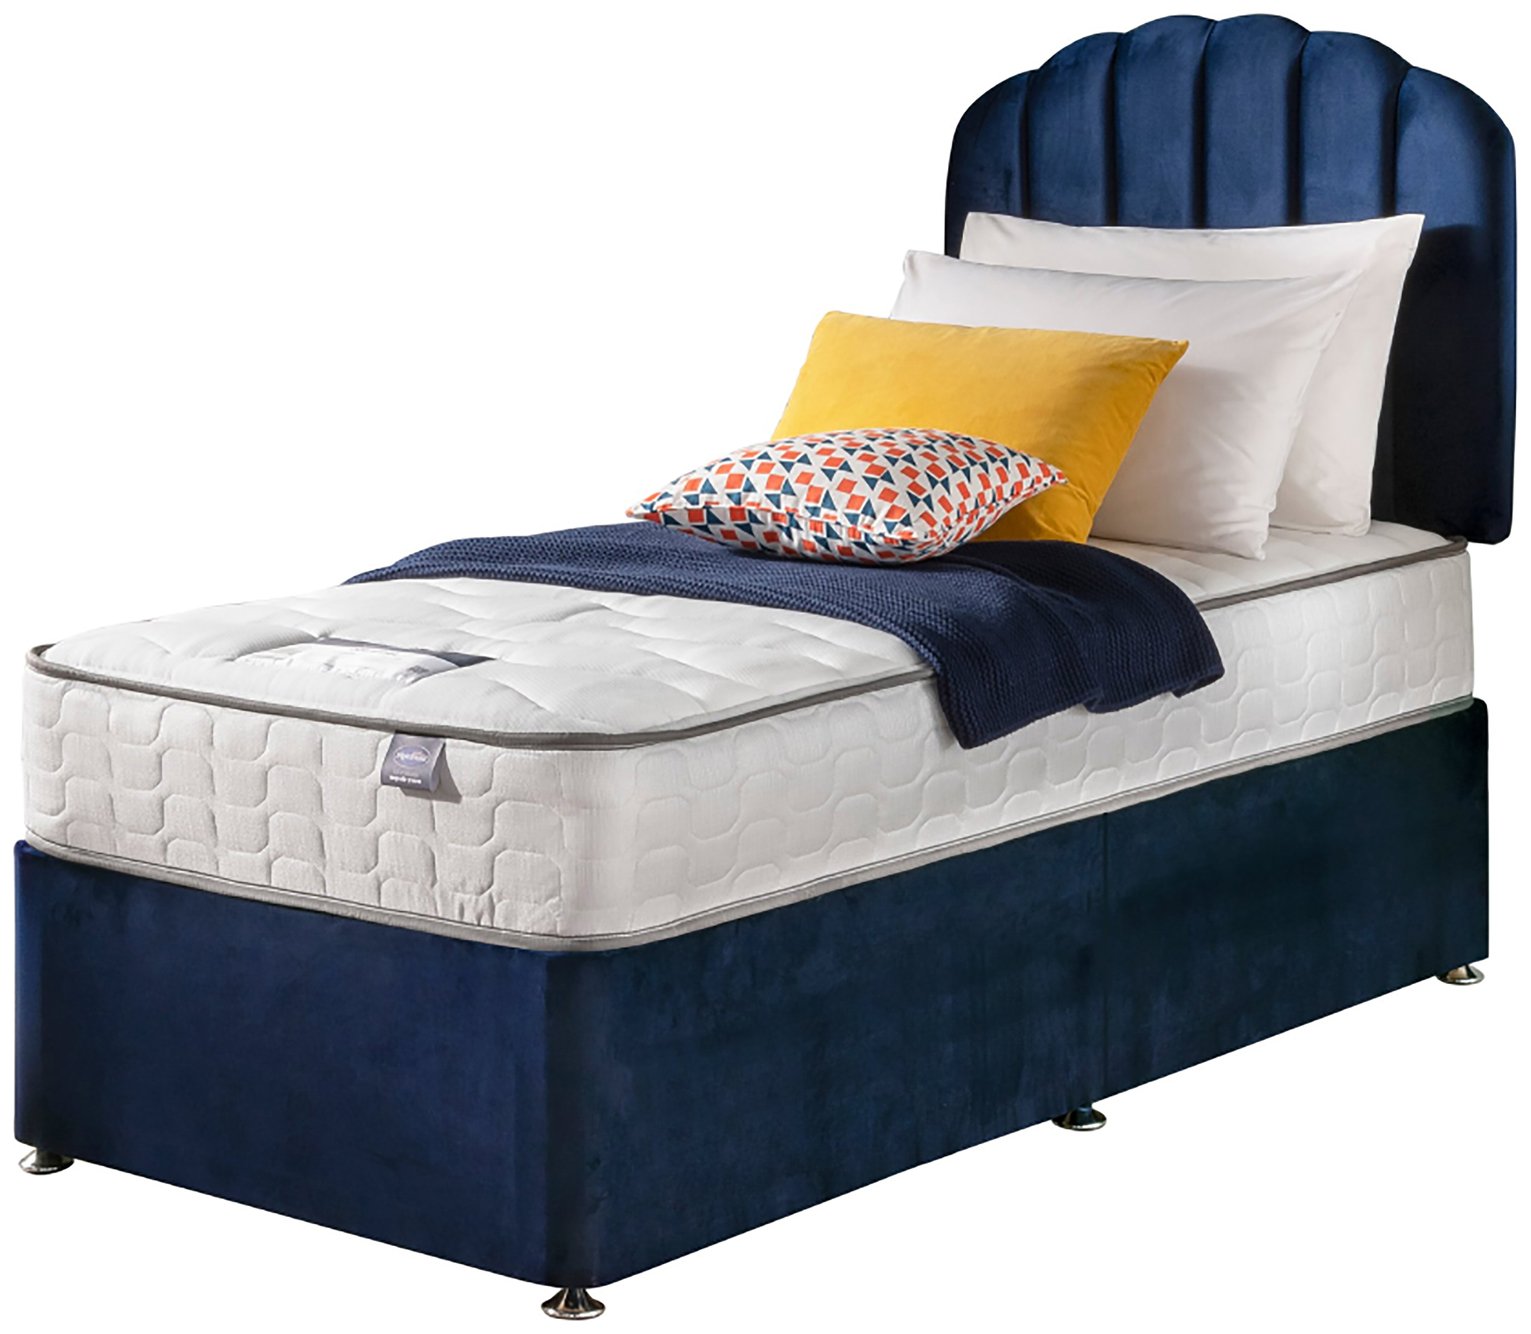 Silentnight Middleton Single Comfort Divan Bed - Blue